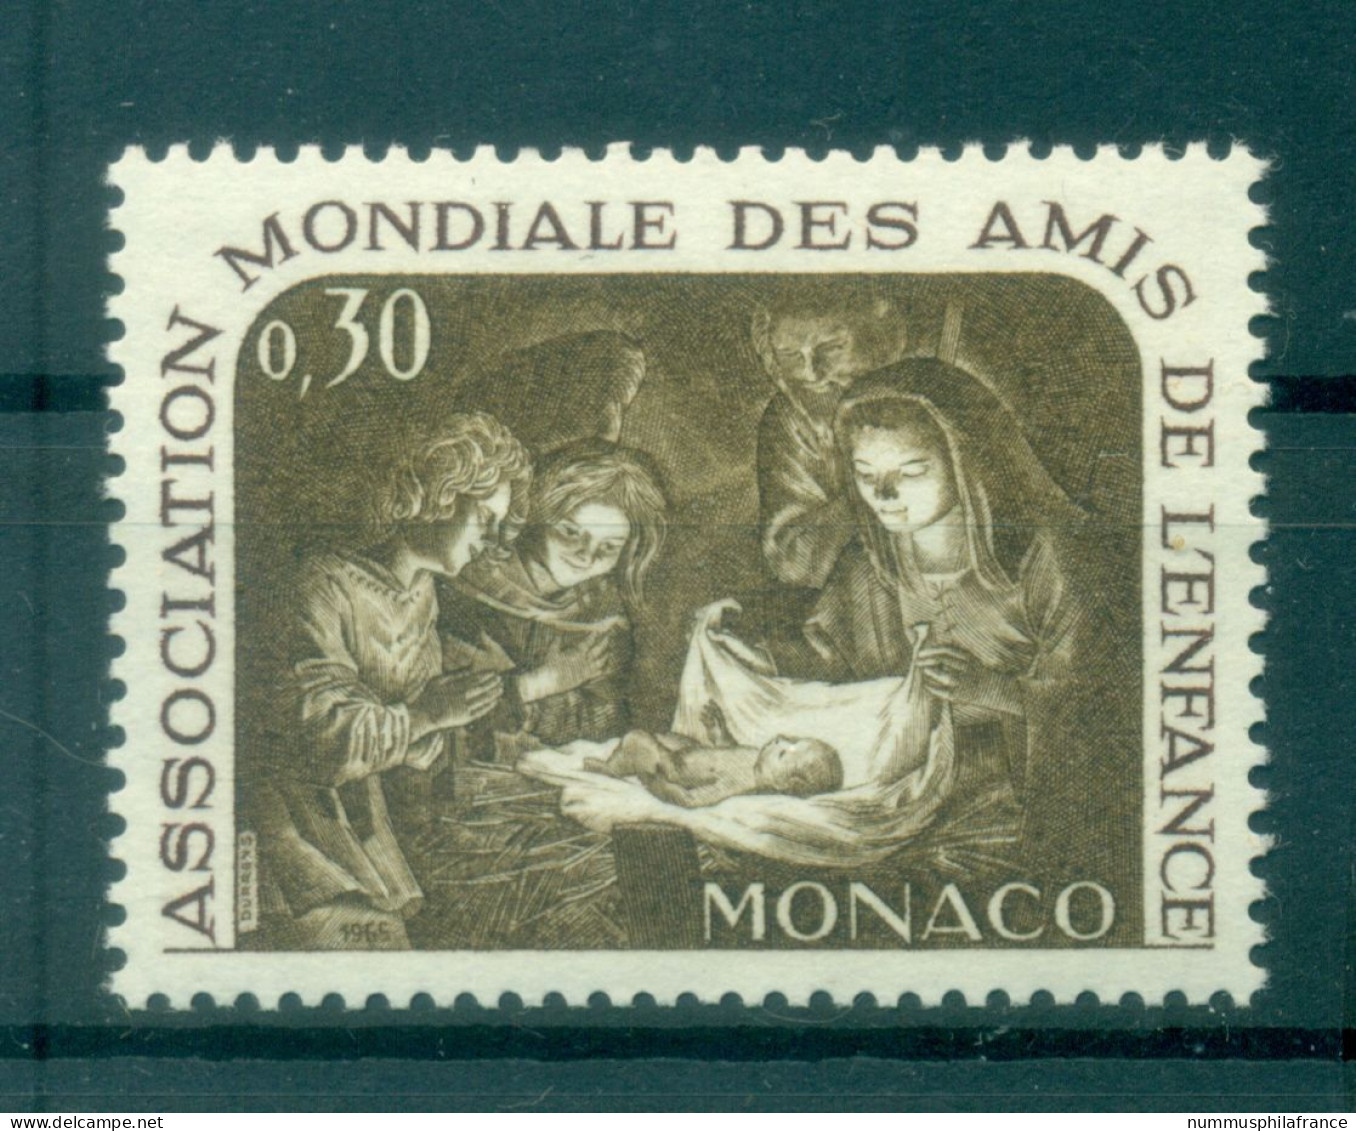 Monaco 1966 - Y & T  N. 688 - AMADE - Neufs